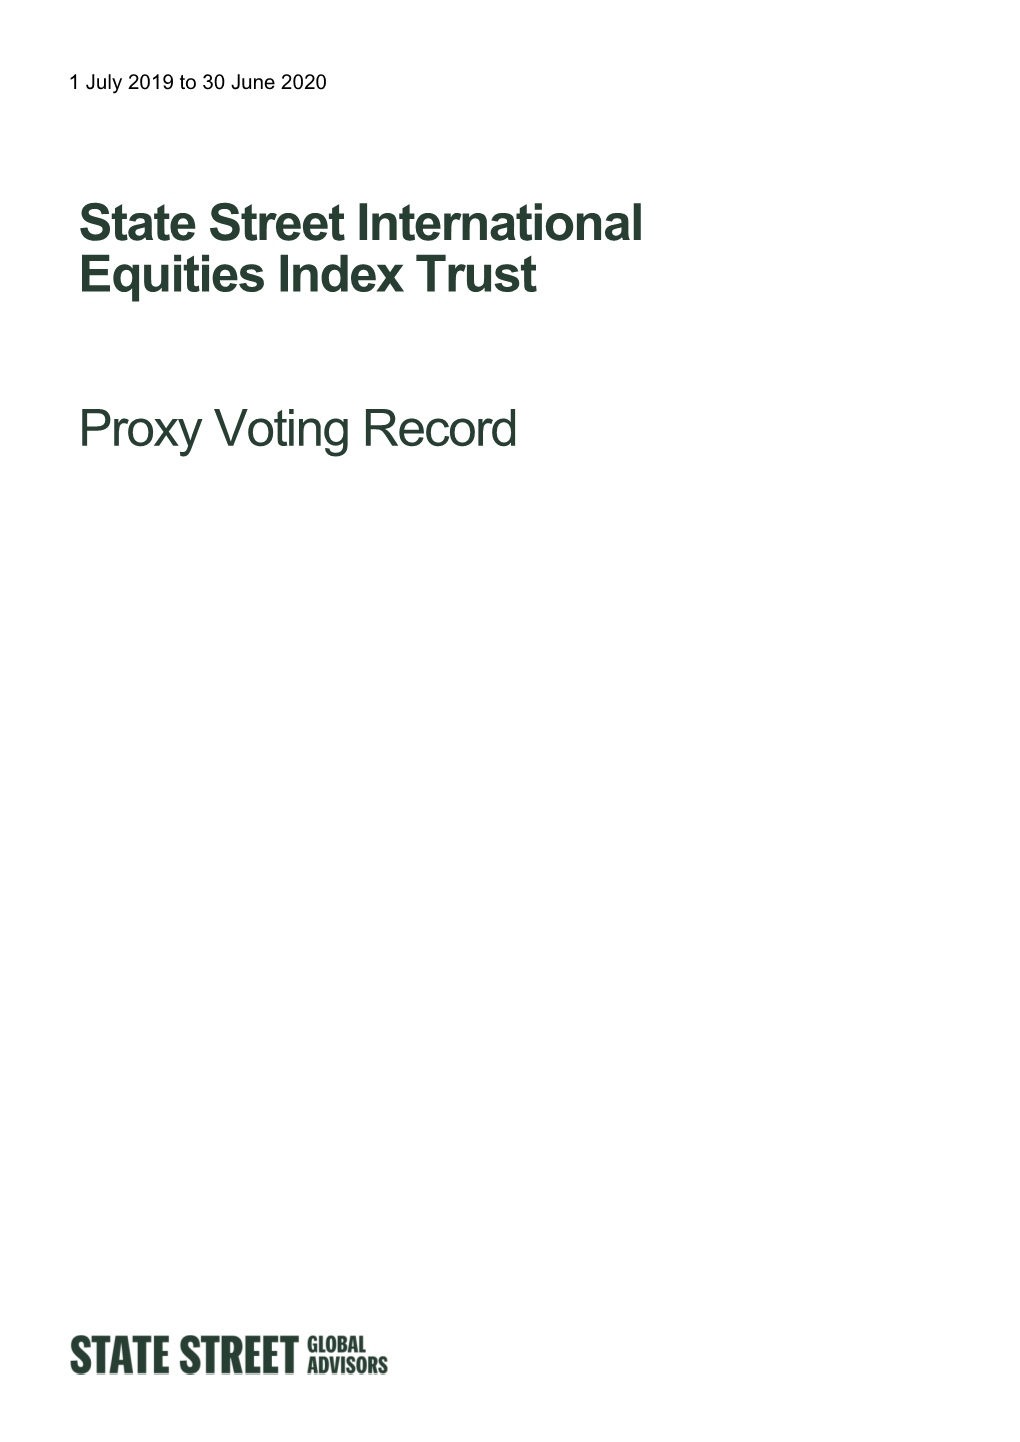 Proxy Voting Report